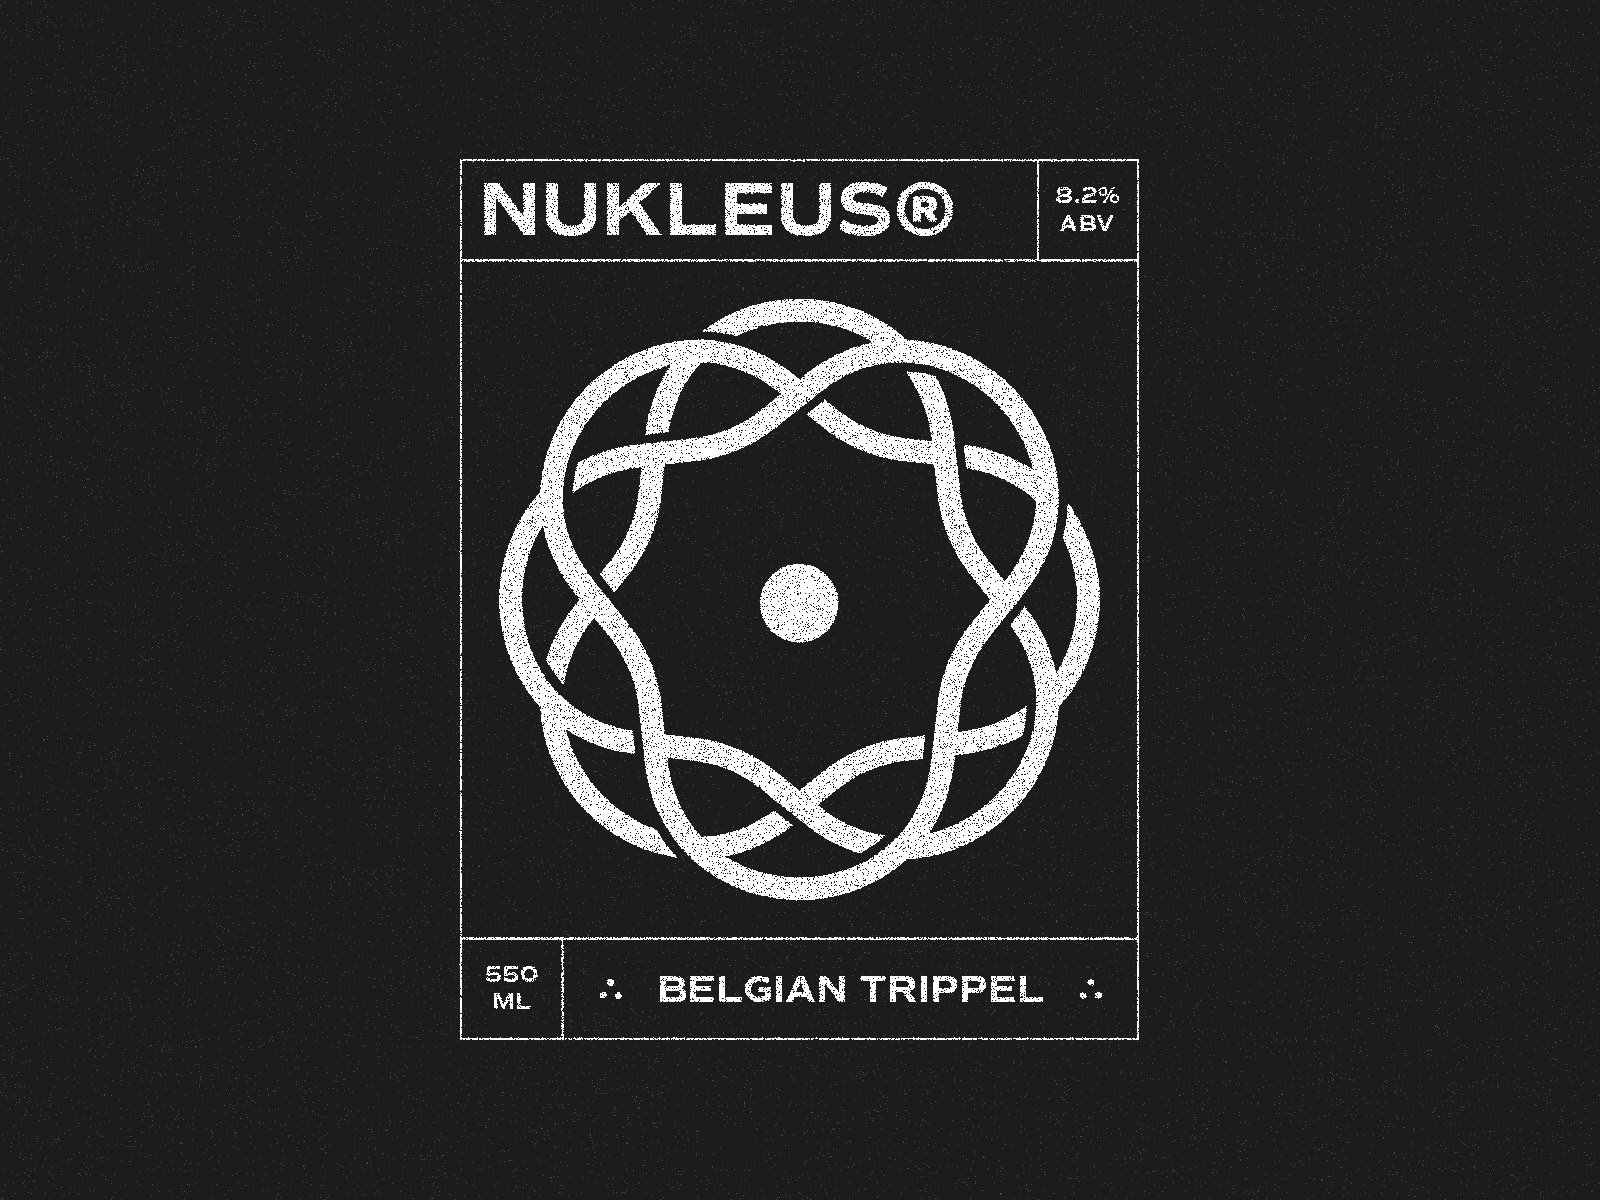 Artwork for a beer label titled Nukleus